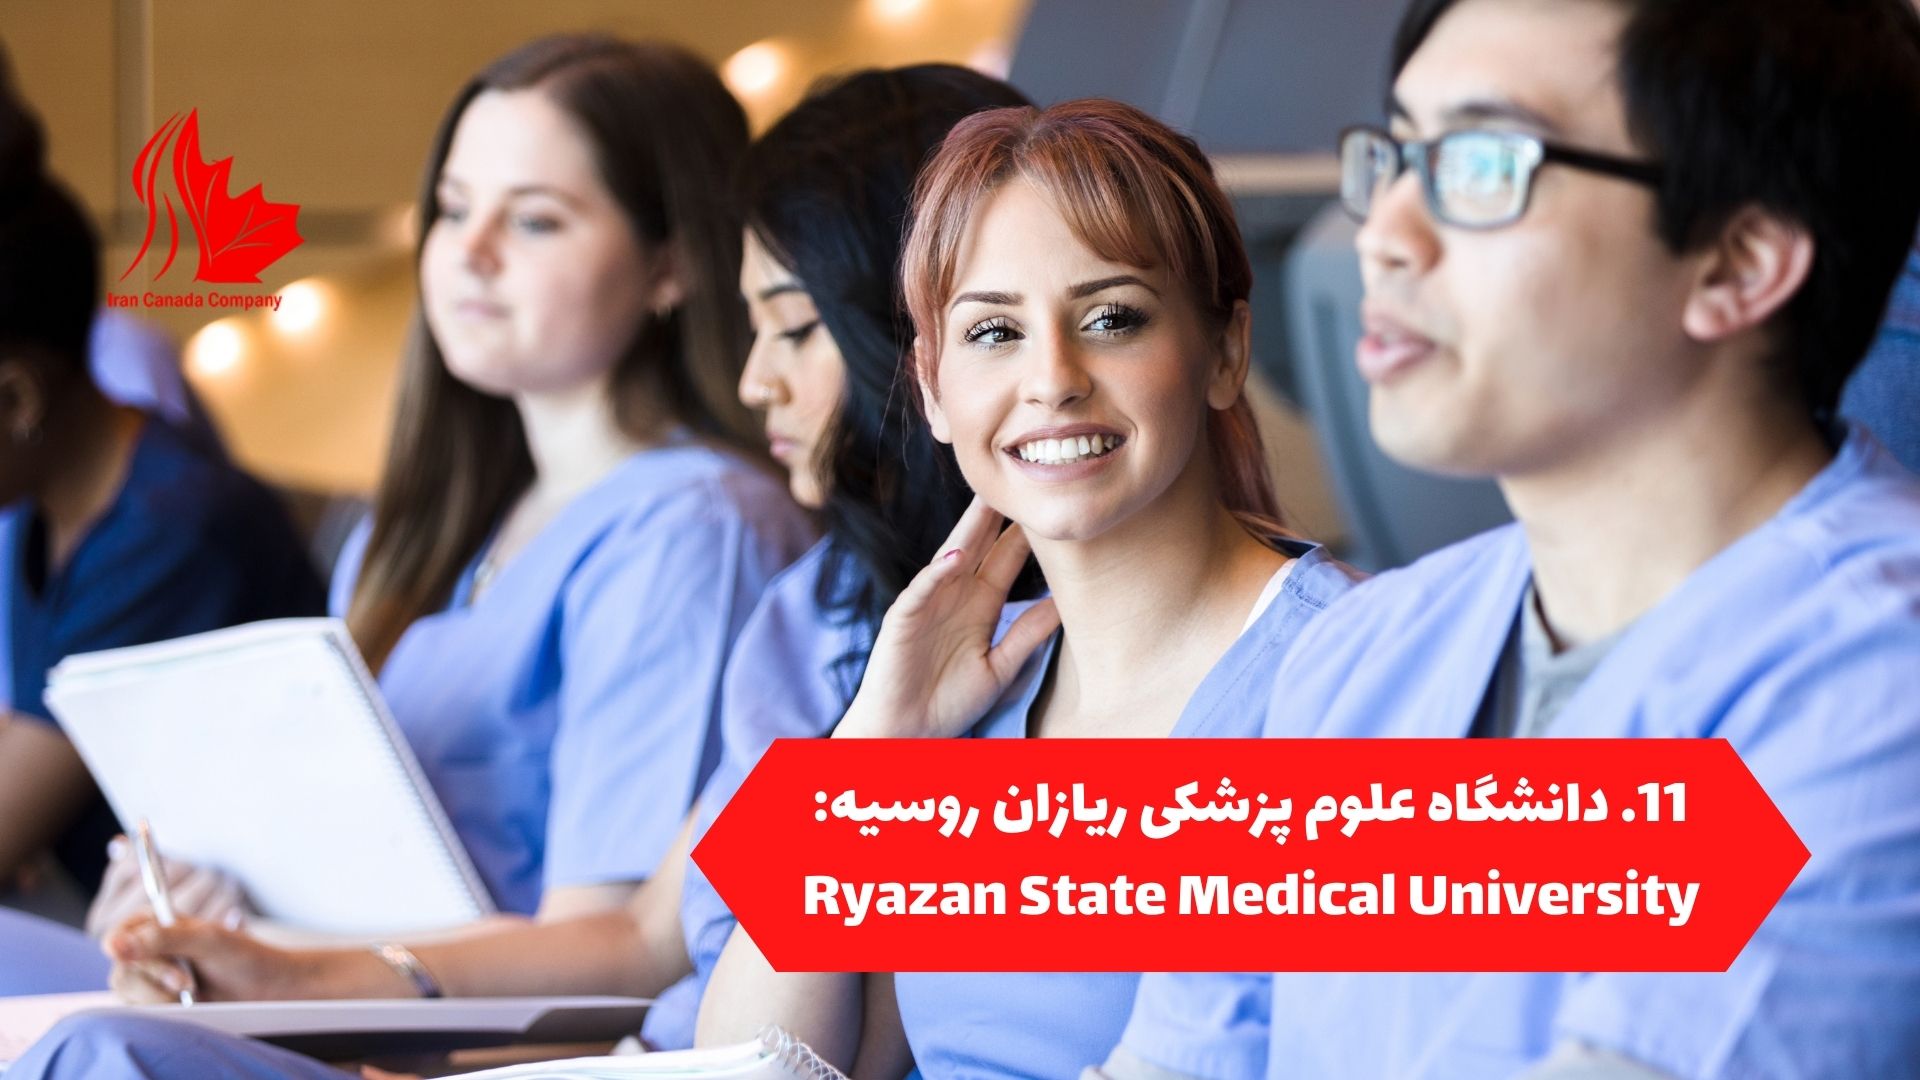 دانشگاه علوم پزشکی ریازان روسیه: Ryazan State Medical University